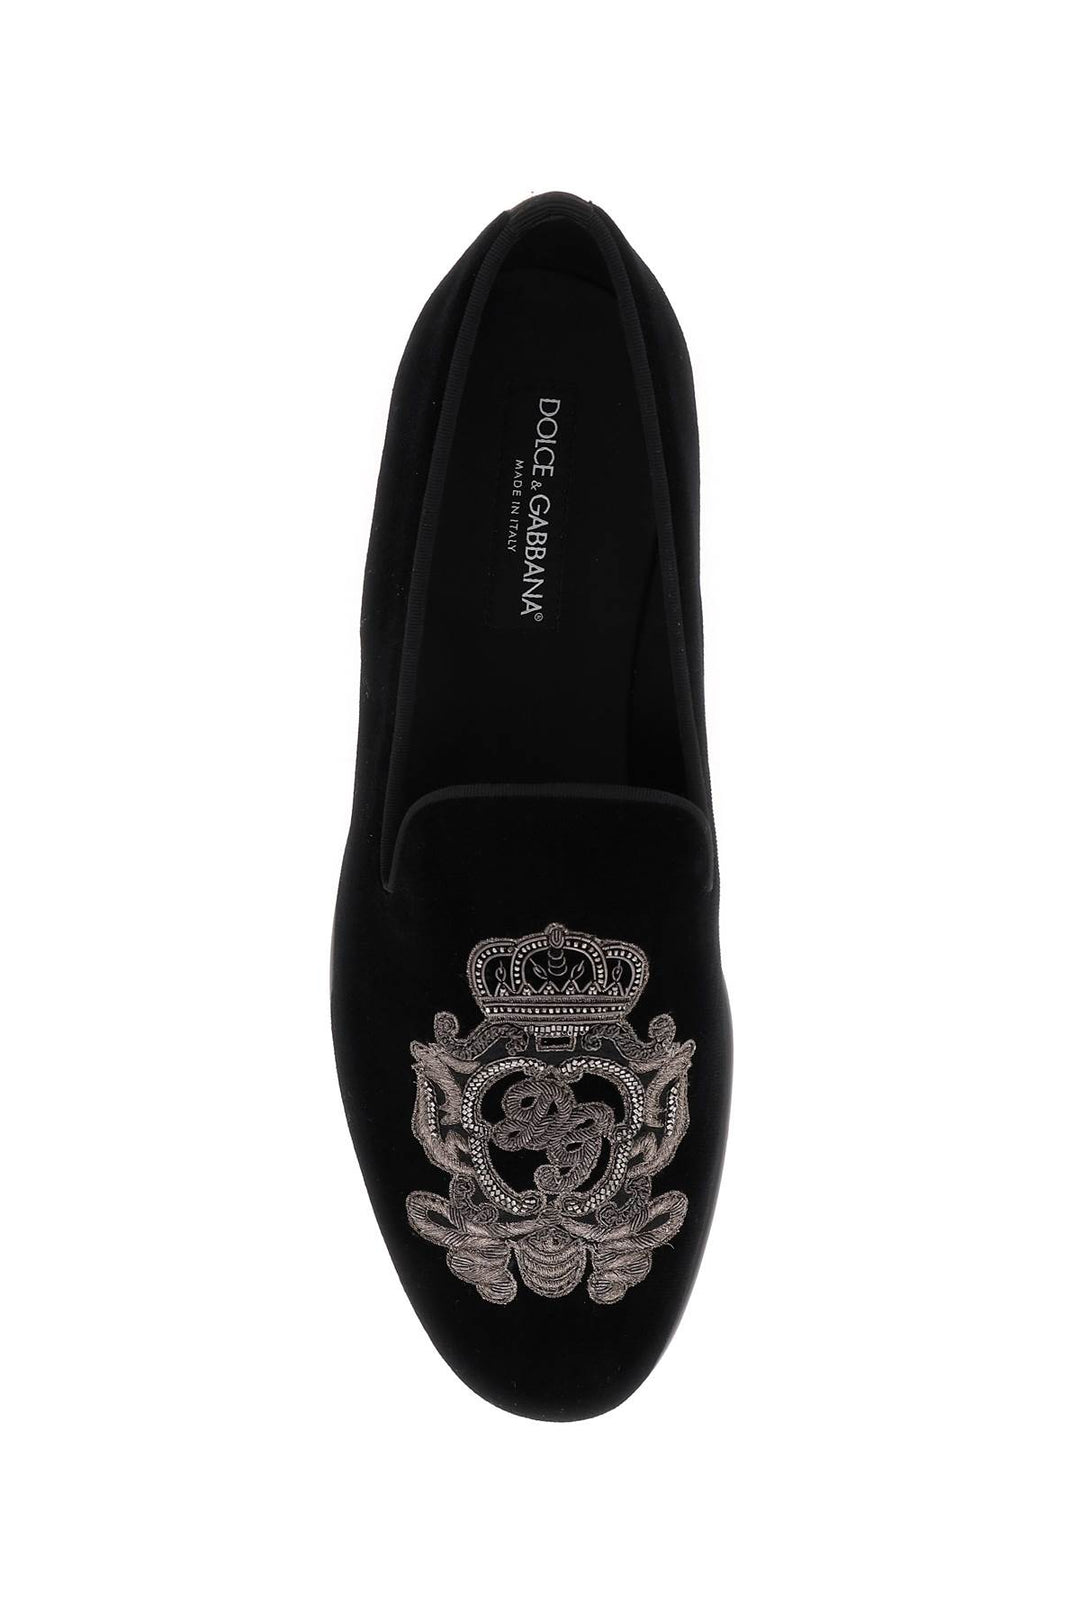 Dolce & Gabbana Velvet Loafers   Black